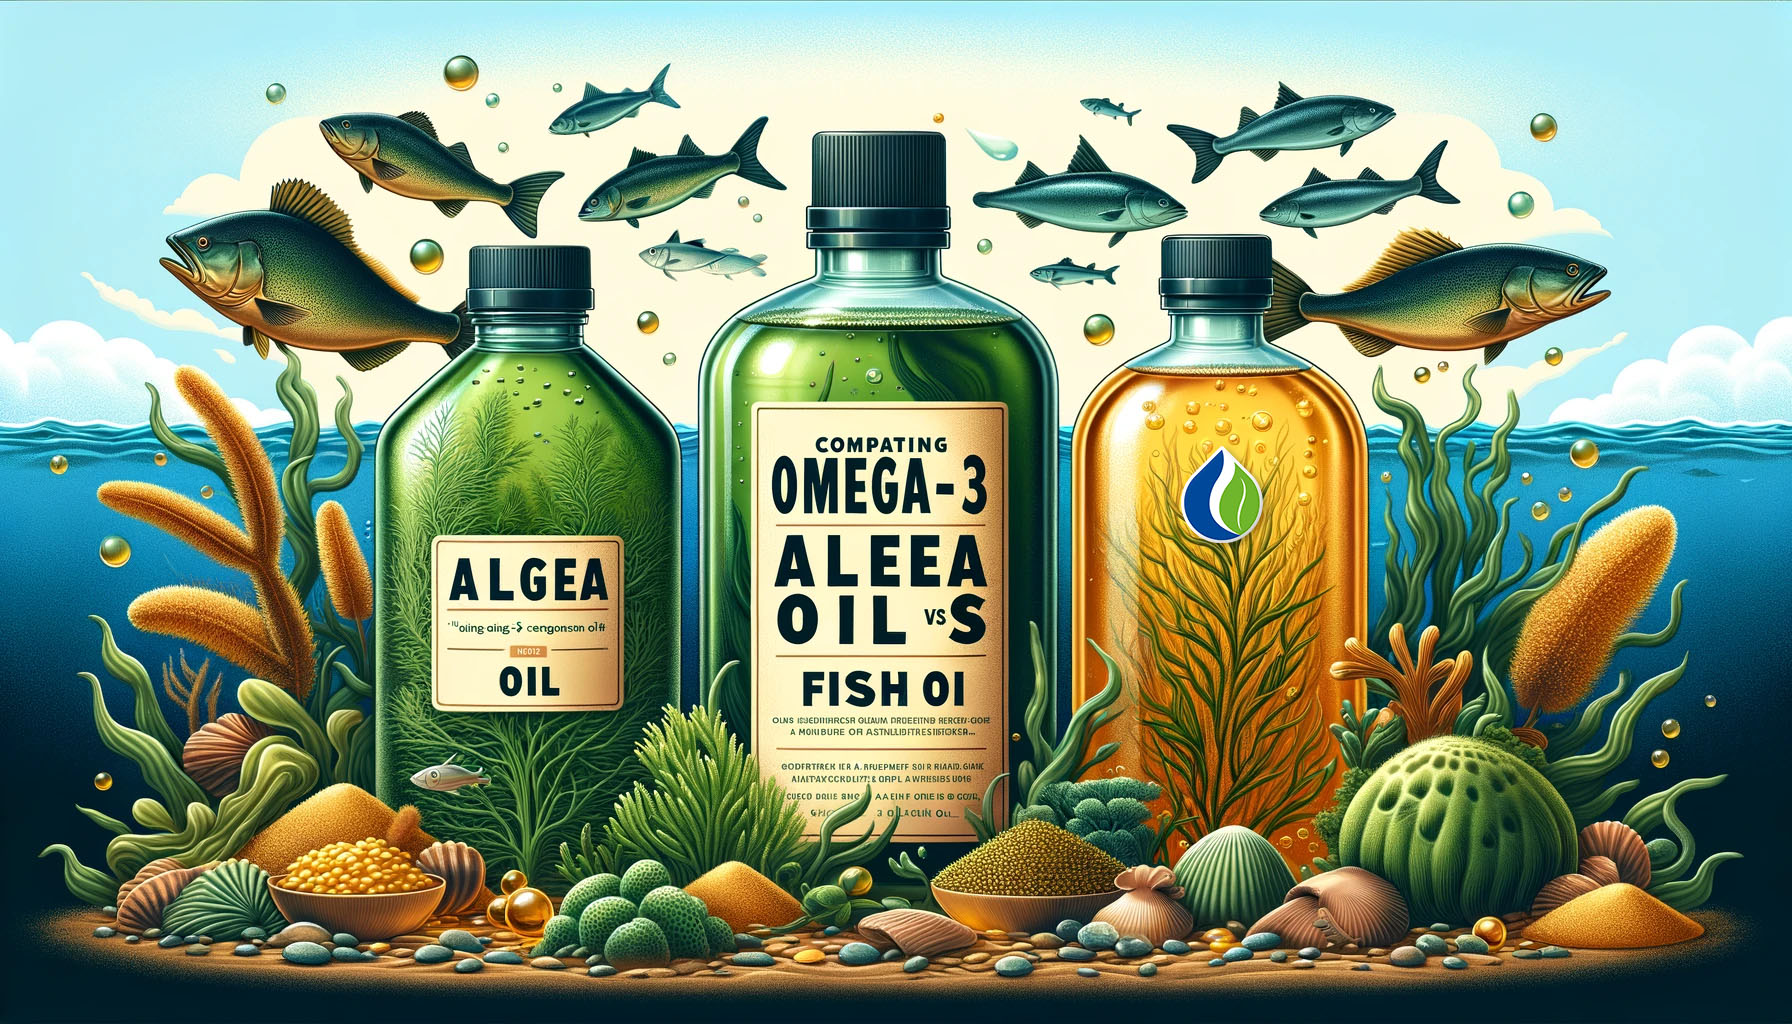 Vergleich von Omega-3-Quellen: Algenöl vs. Fischöl